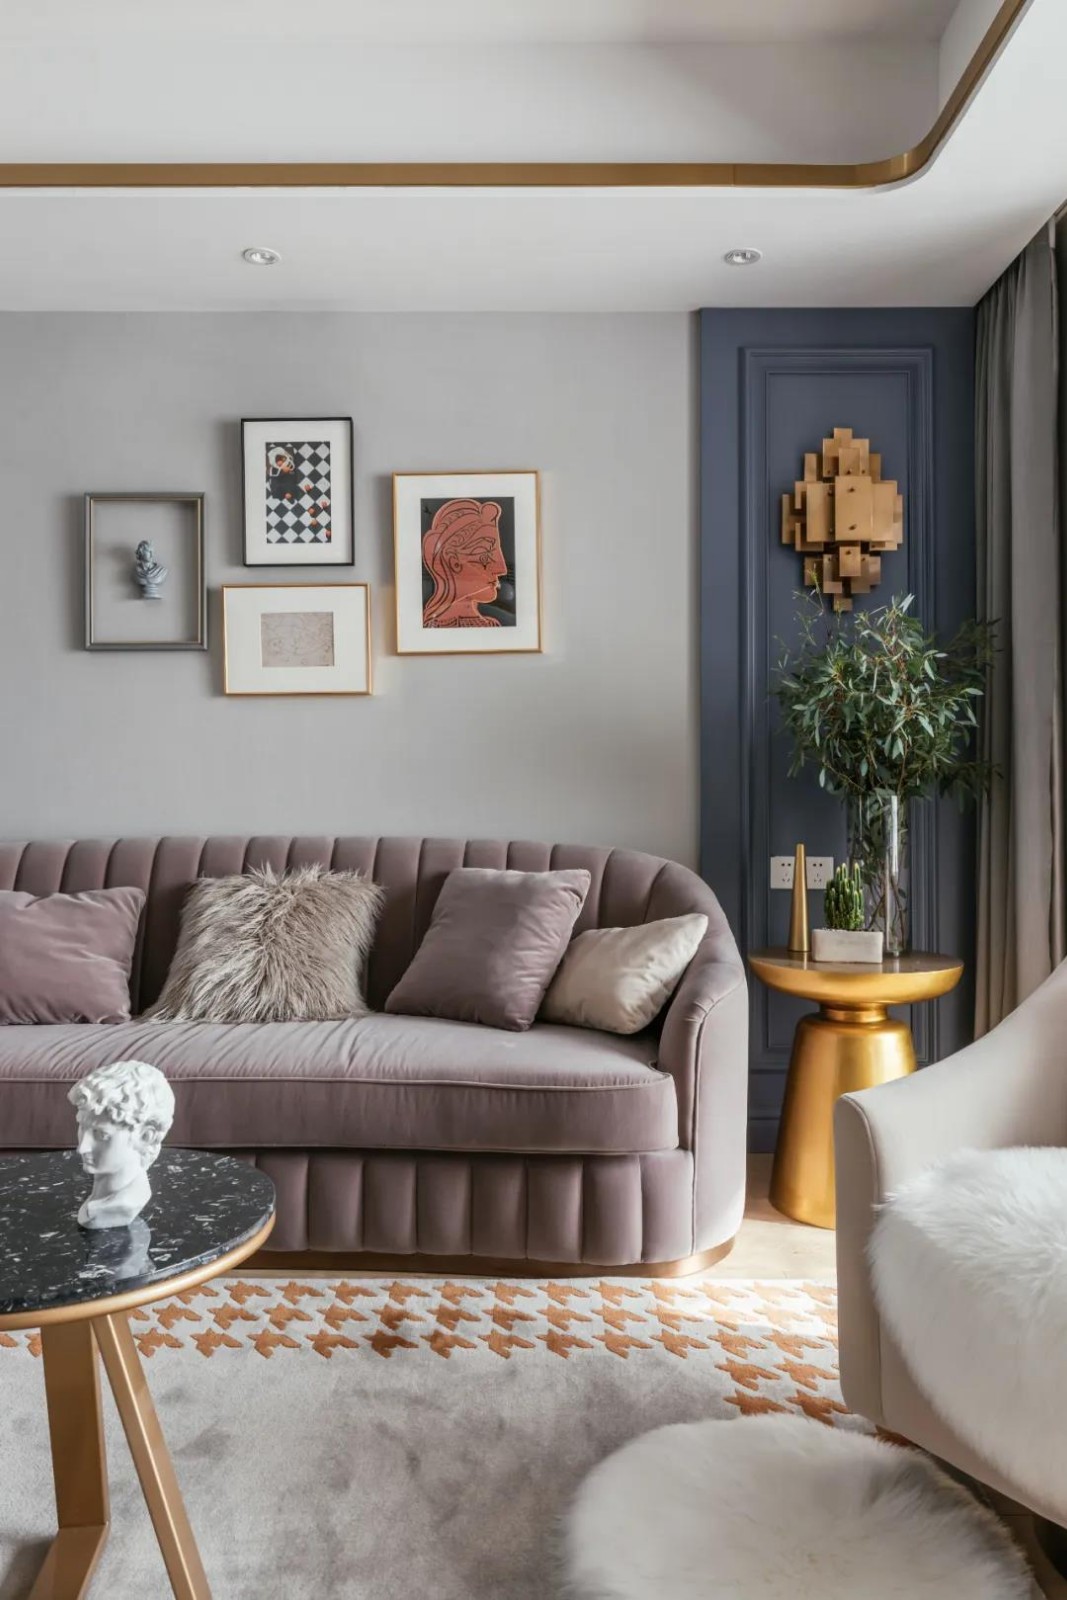 灰褐色丝绒沙发搭配大理石圆形茶几,让客厅舒适而精致